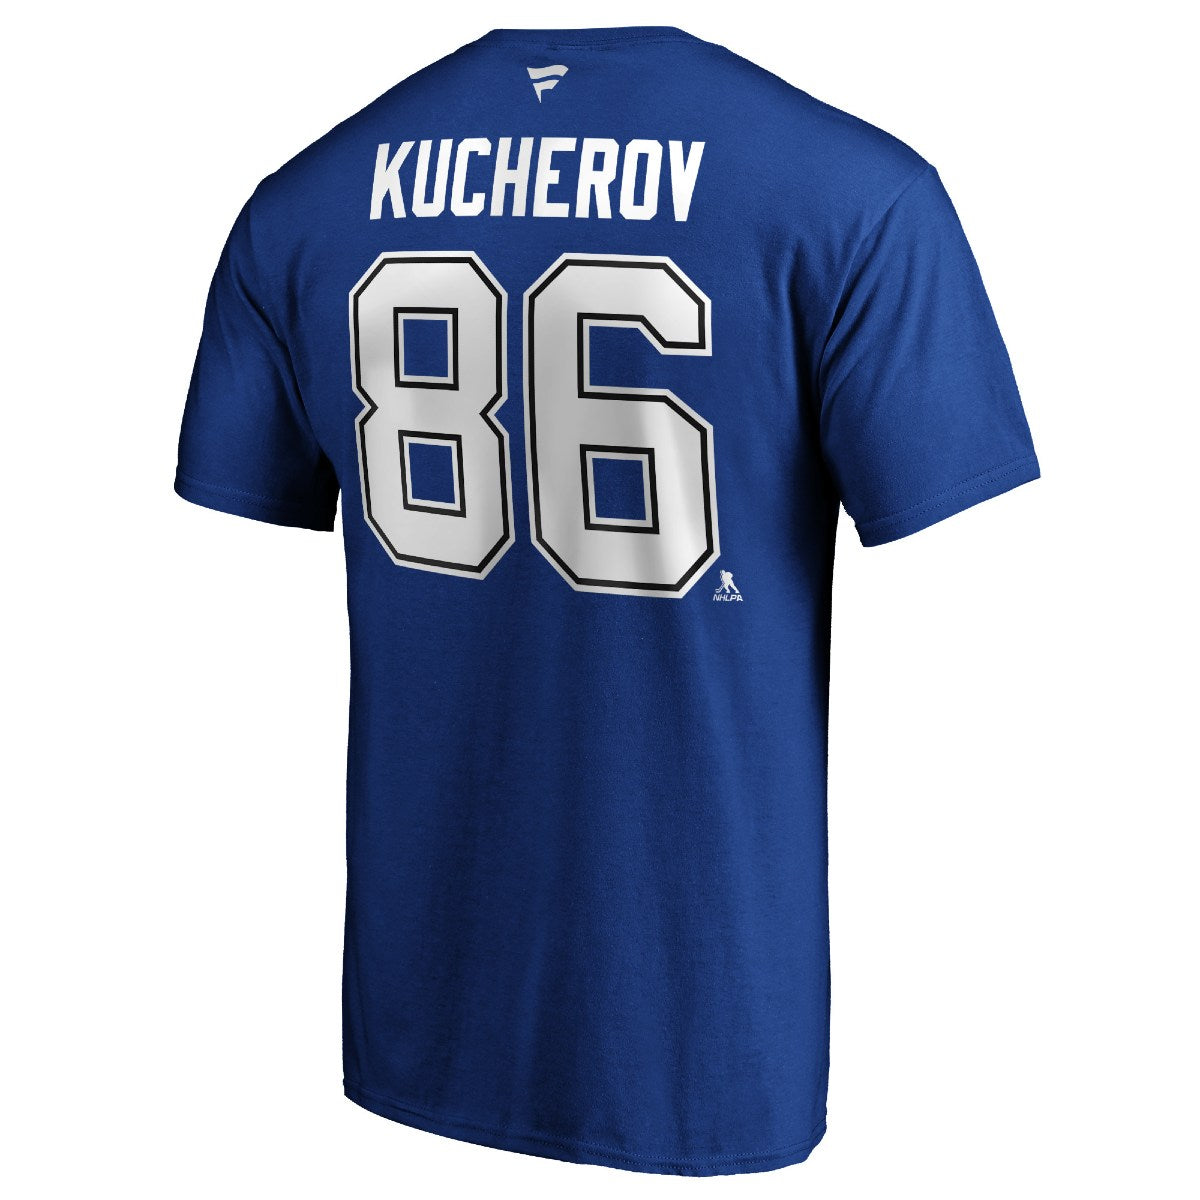 Tampa Bay Lightning Nikita Kucherov Name & Number Player Tee